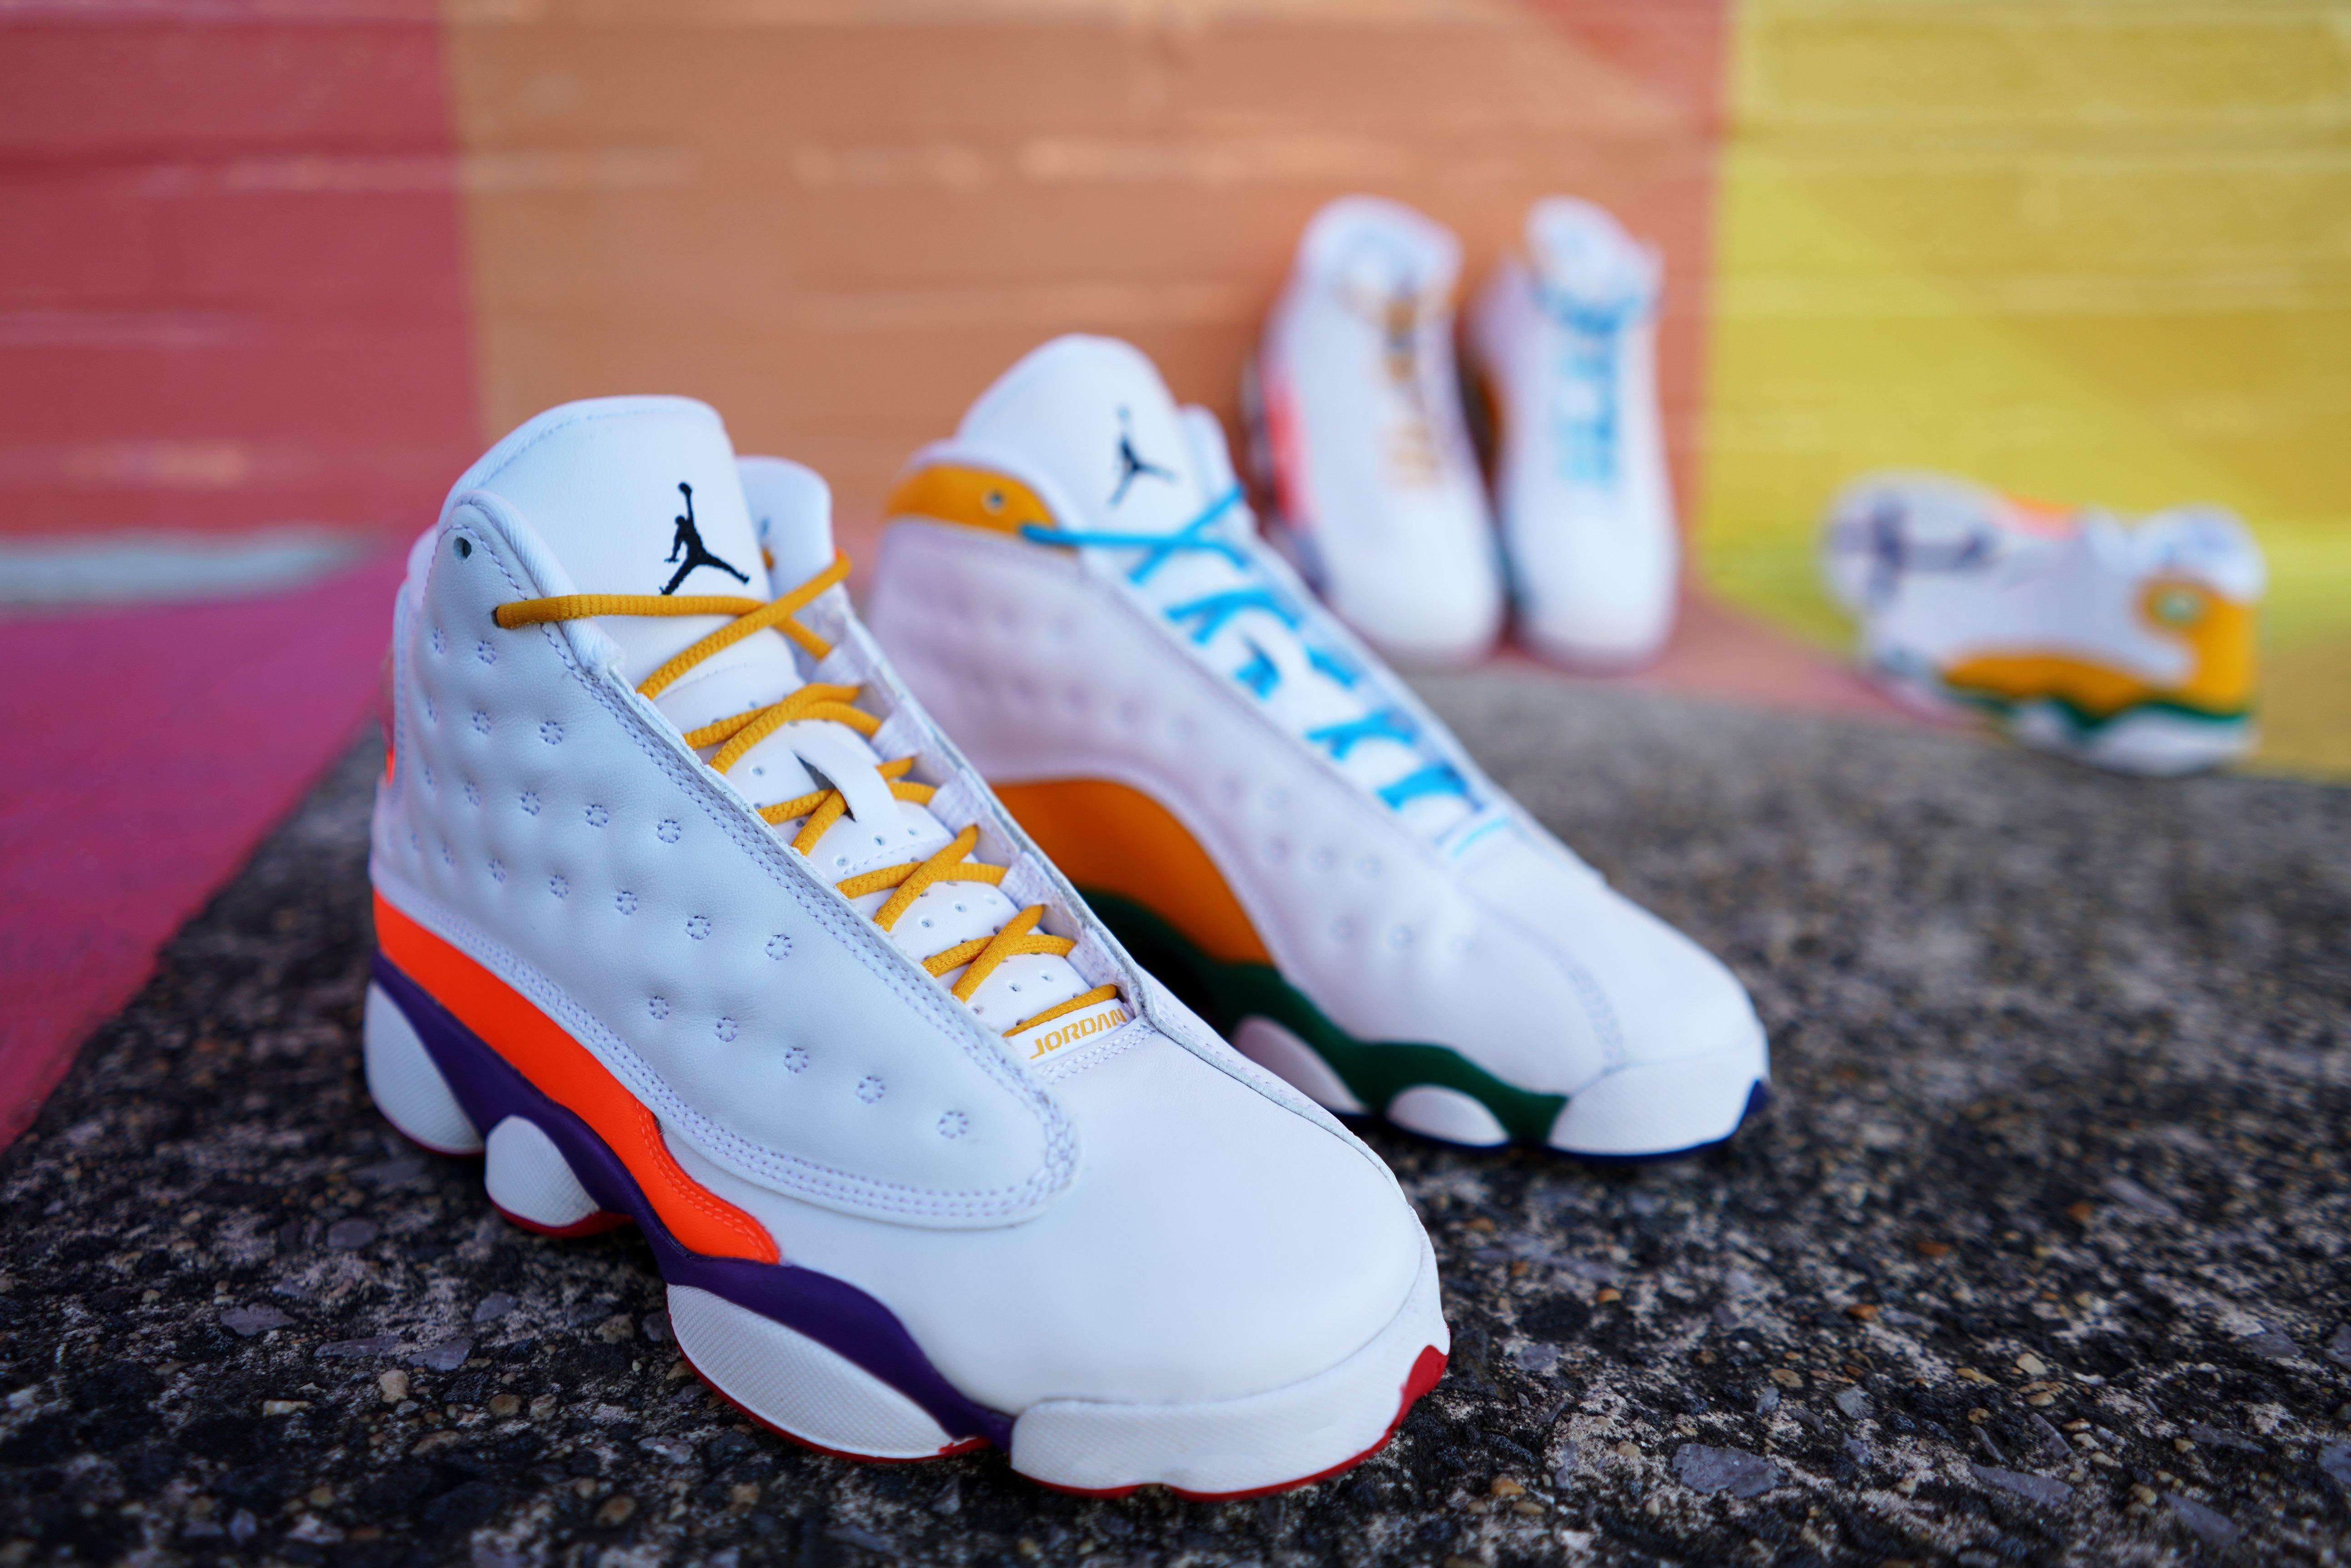 Sneakers Release – Air Jordan Retro 13 